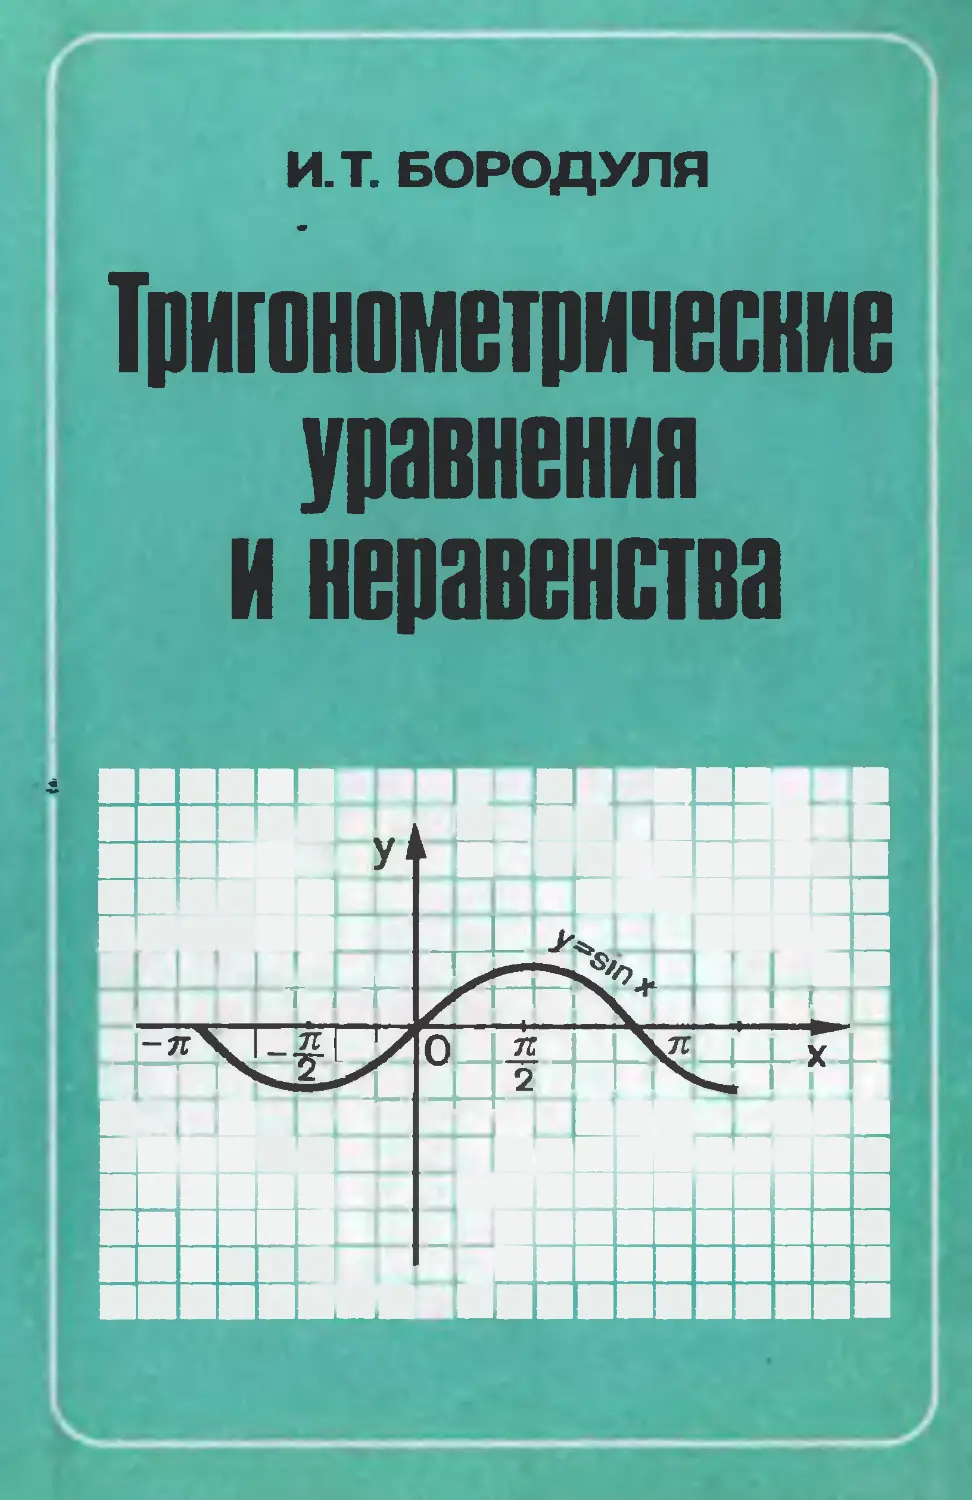 Тригонометрические уравнения и неравенства. Бородуля И. Т., 1989